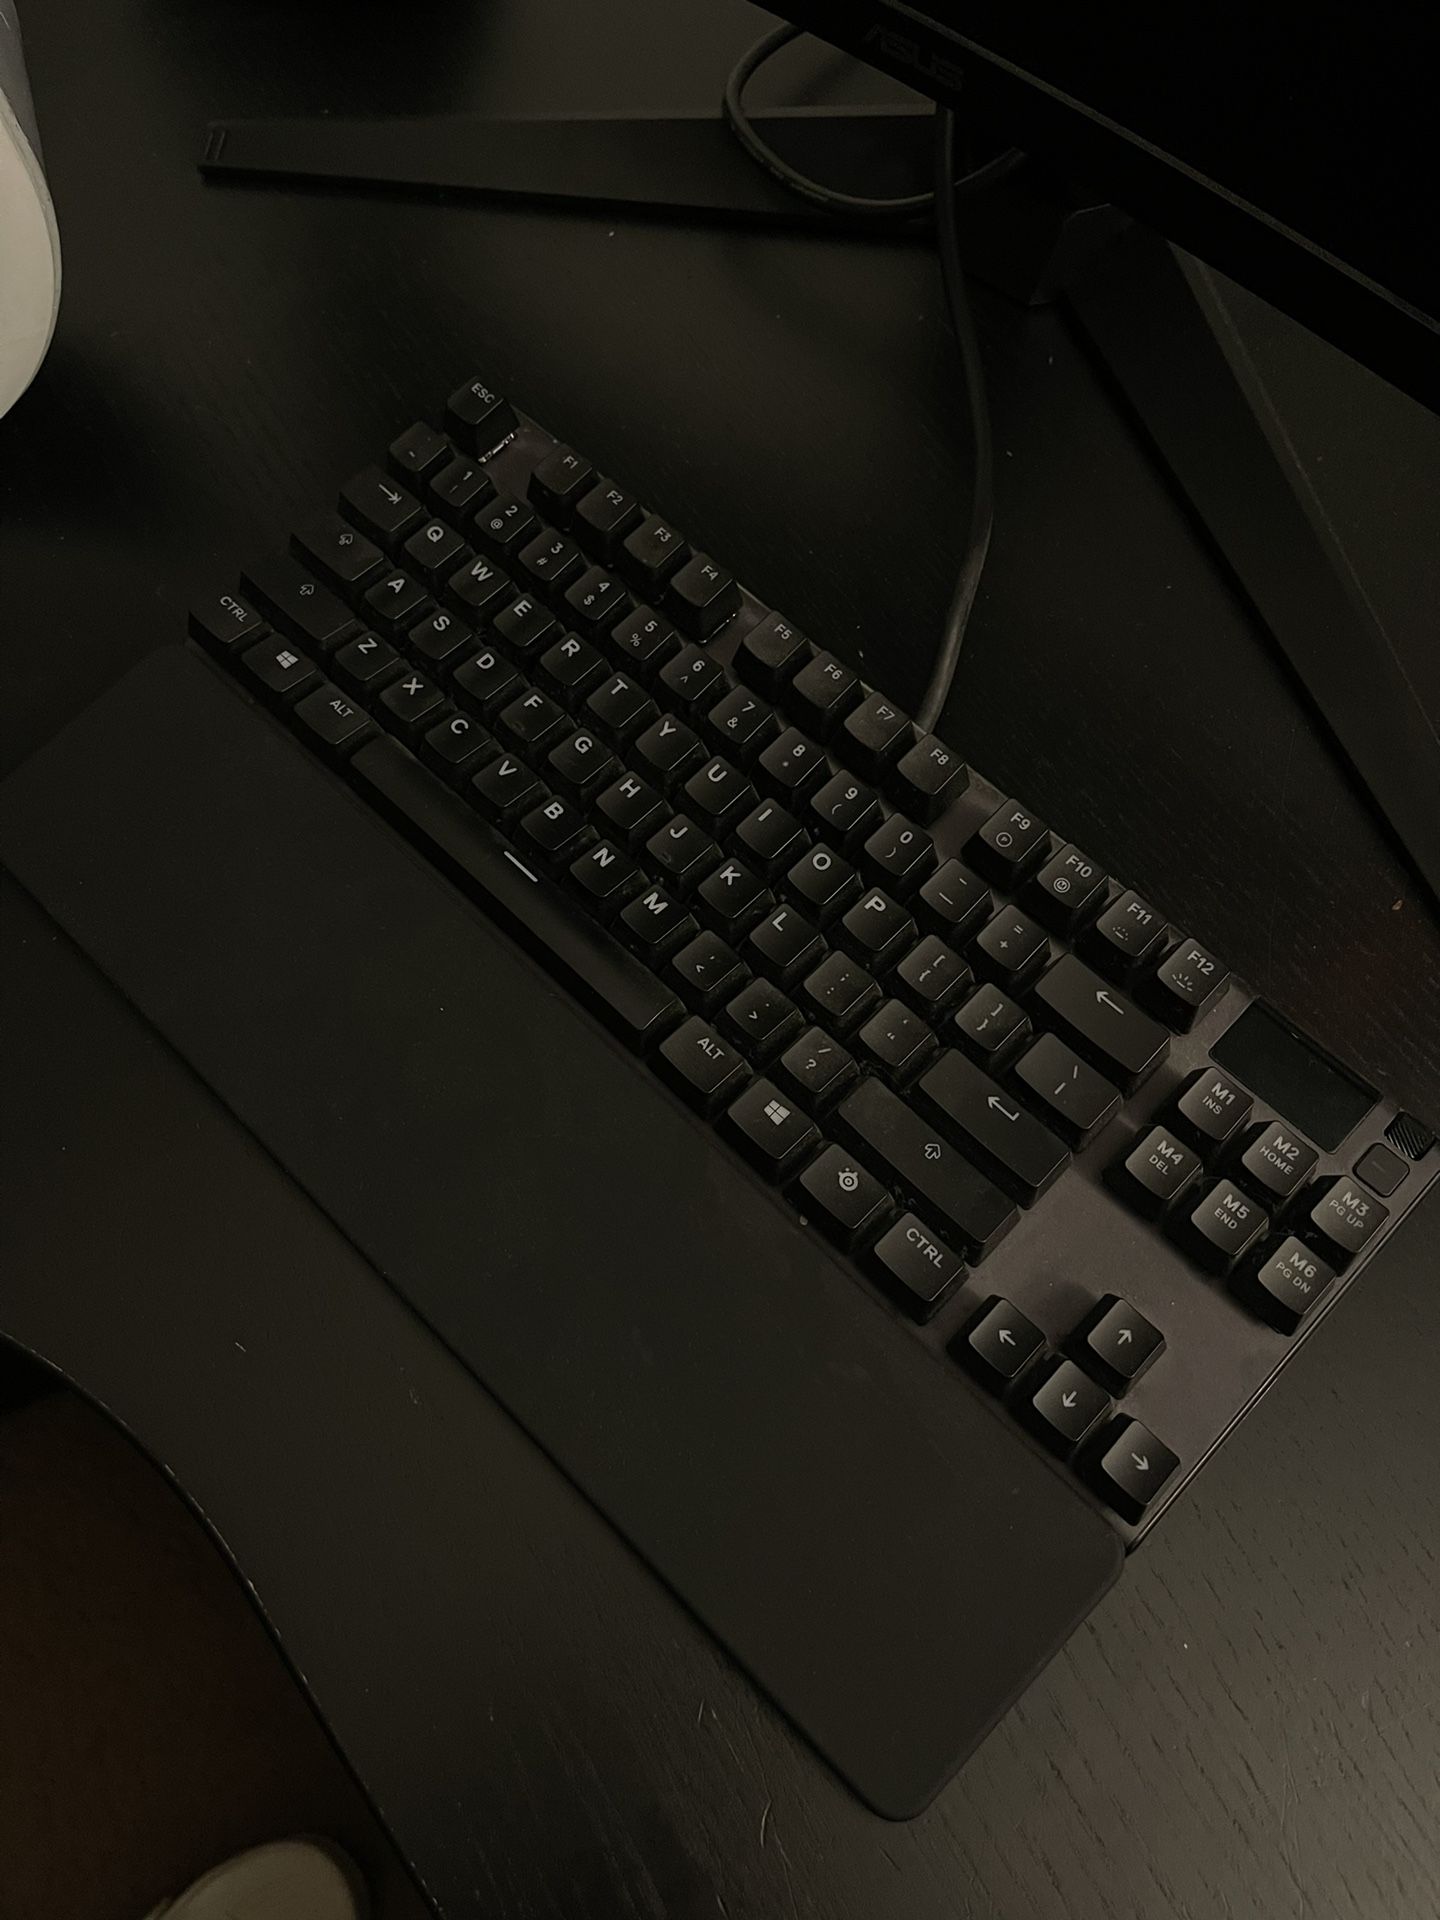 steelseries keyboard 